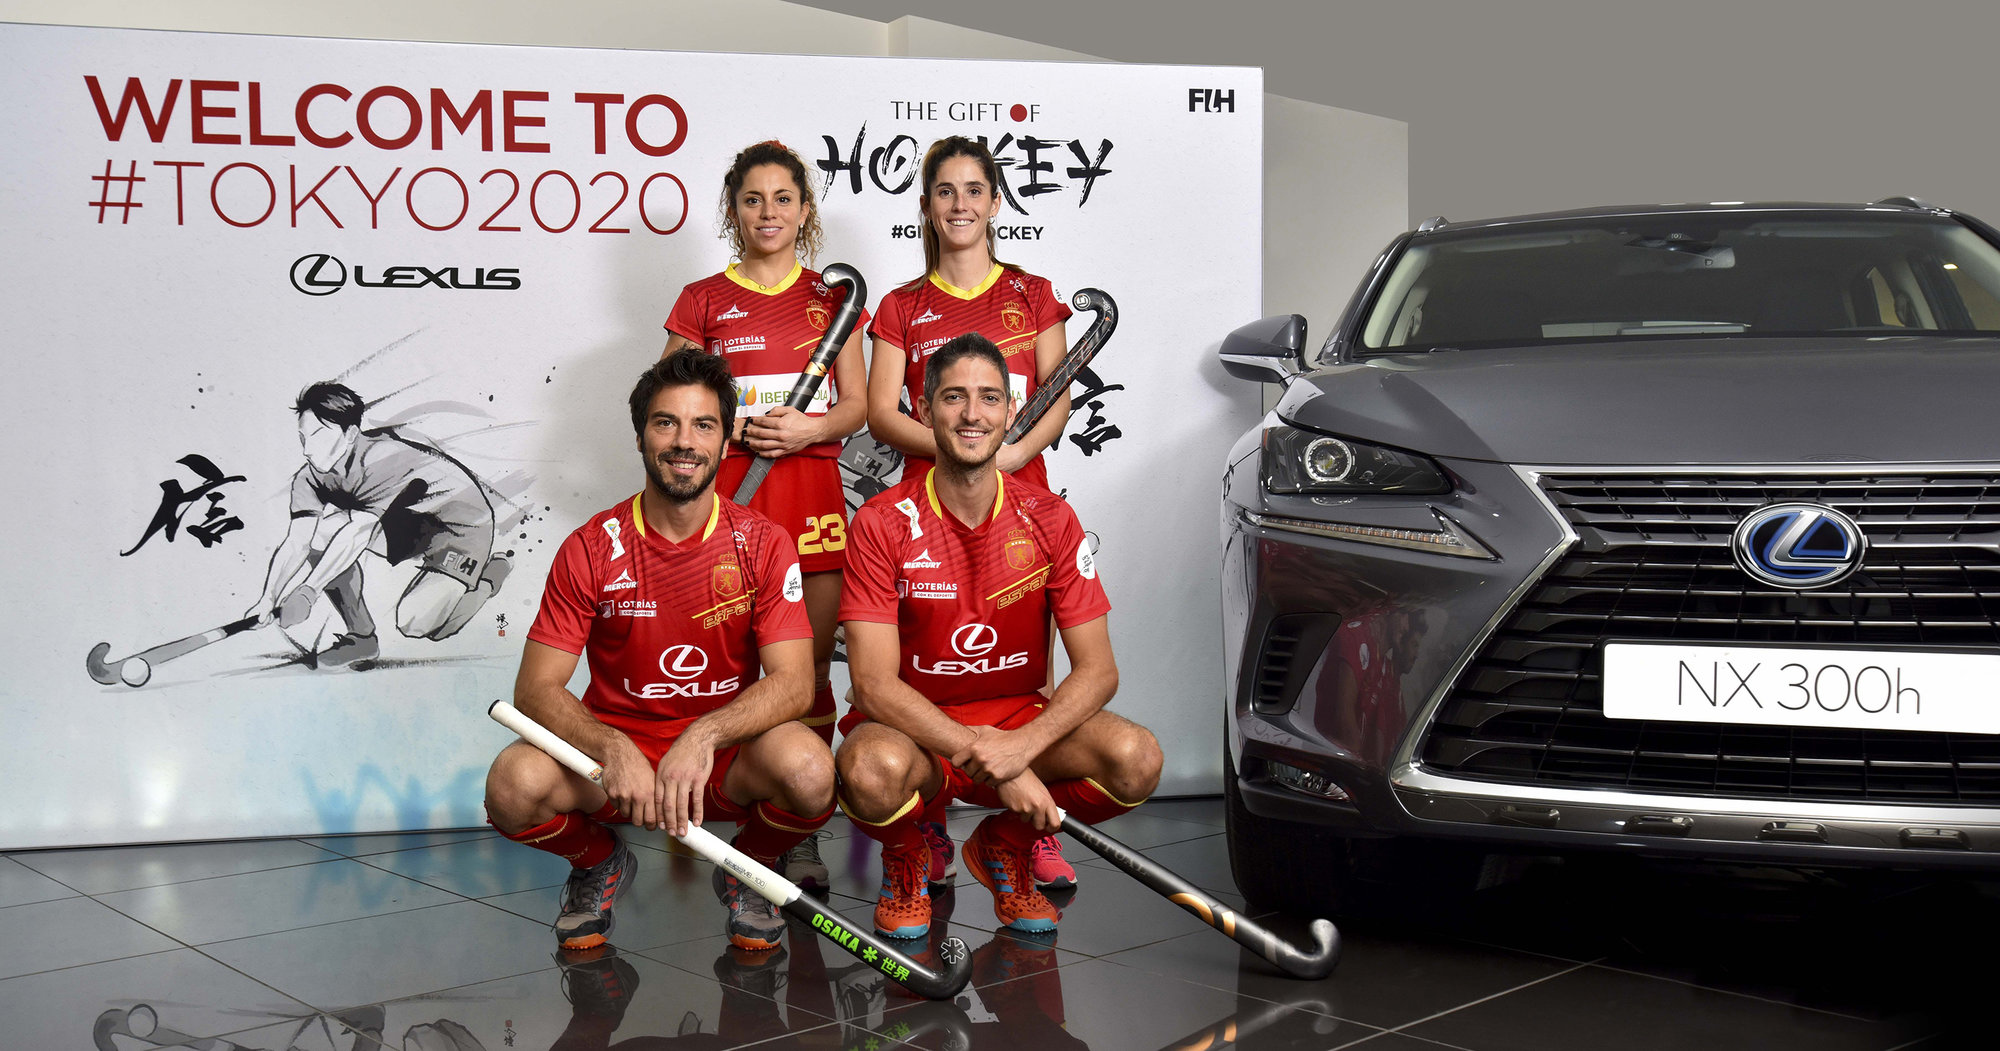 Galería: Lexus celebra con la Selección Española de Hockey su reciente clasificación para las Olimpiadas de Tokio 2020